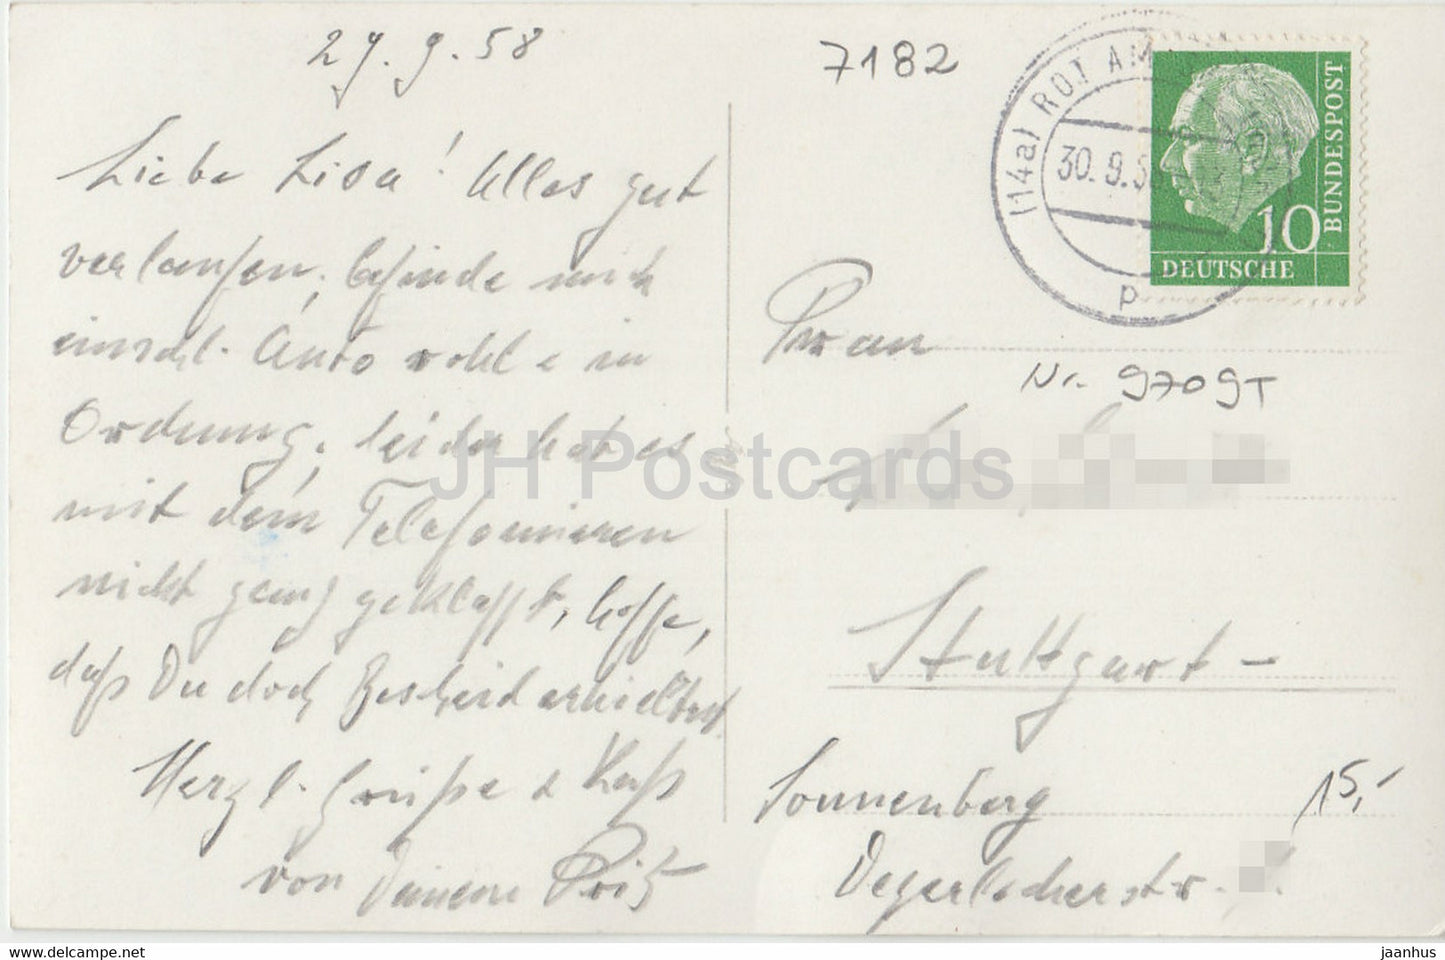 Amlishagen - Kreis Gerabronn - 154397 - alte Postkarte - 1958 - Deutschland - gebraucht